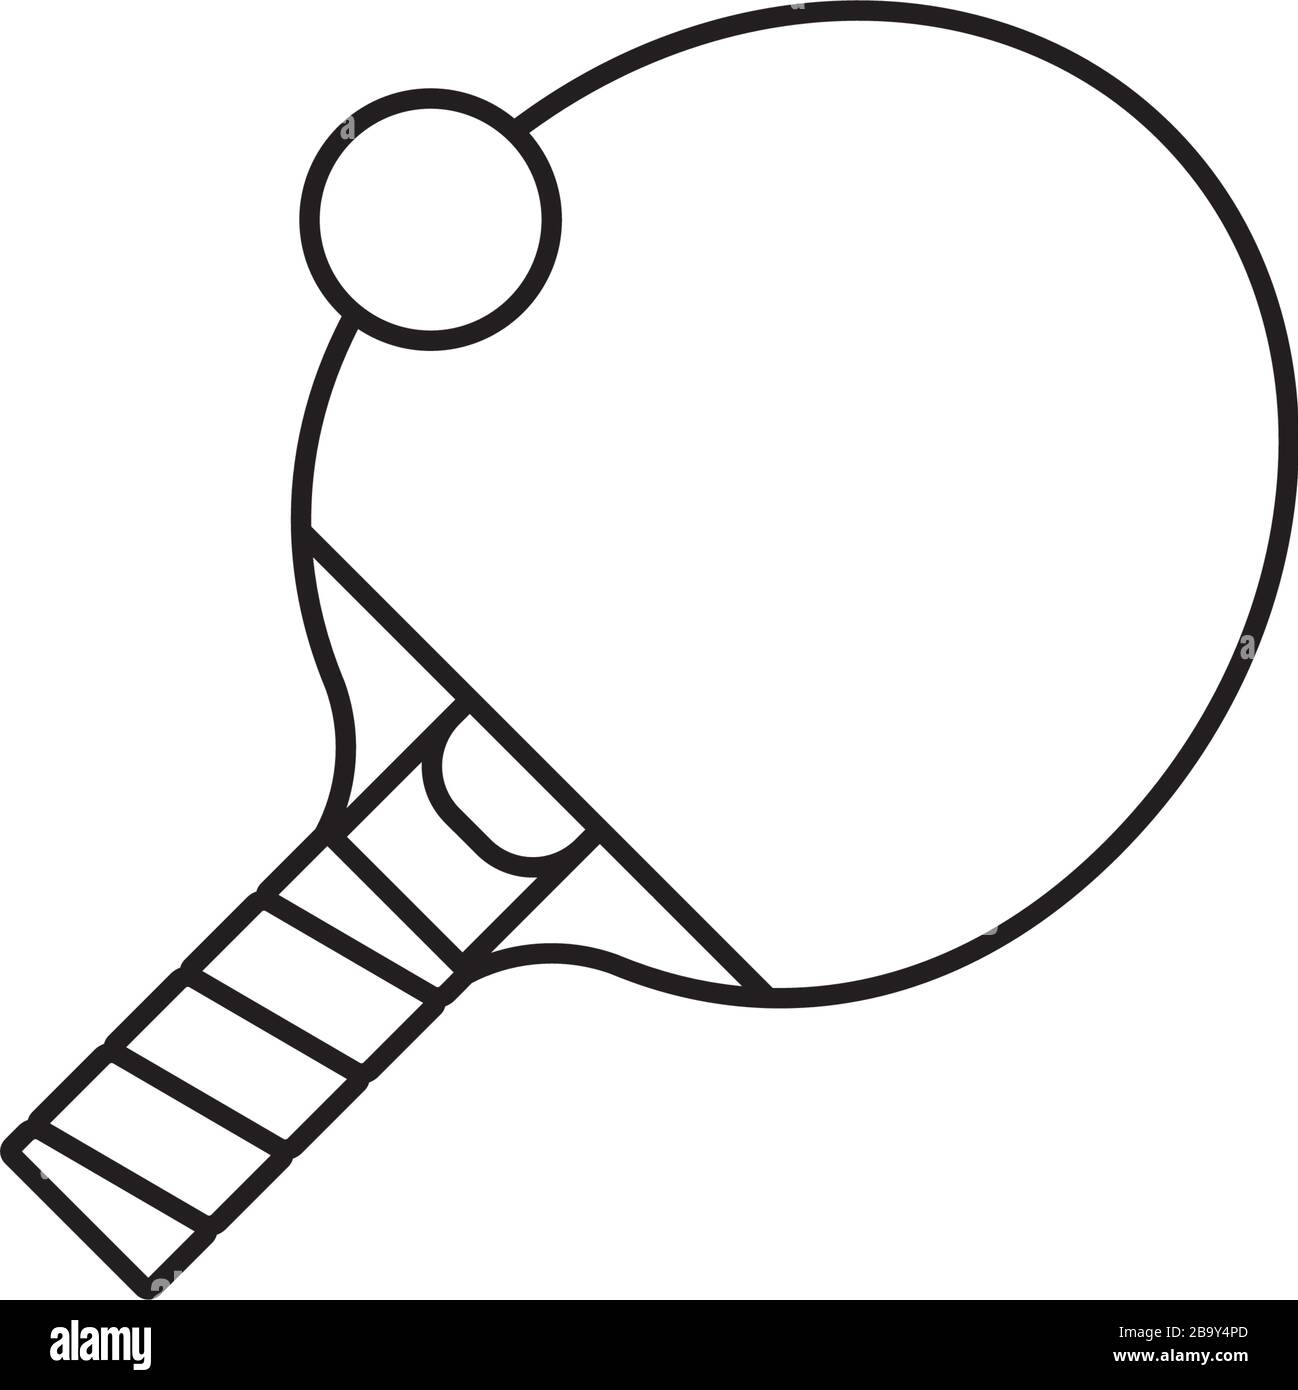 Conception D'affiche De Ping-pong. Couverture De Tennis De Table.  Illustration De Plat Vectorielle Banque D'Images et Photos Libres De  Droits. Image 109926186